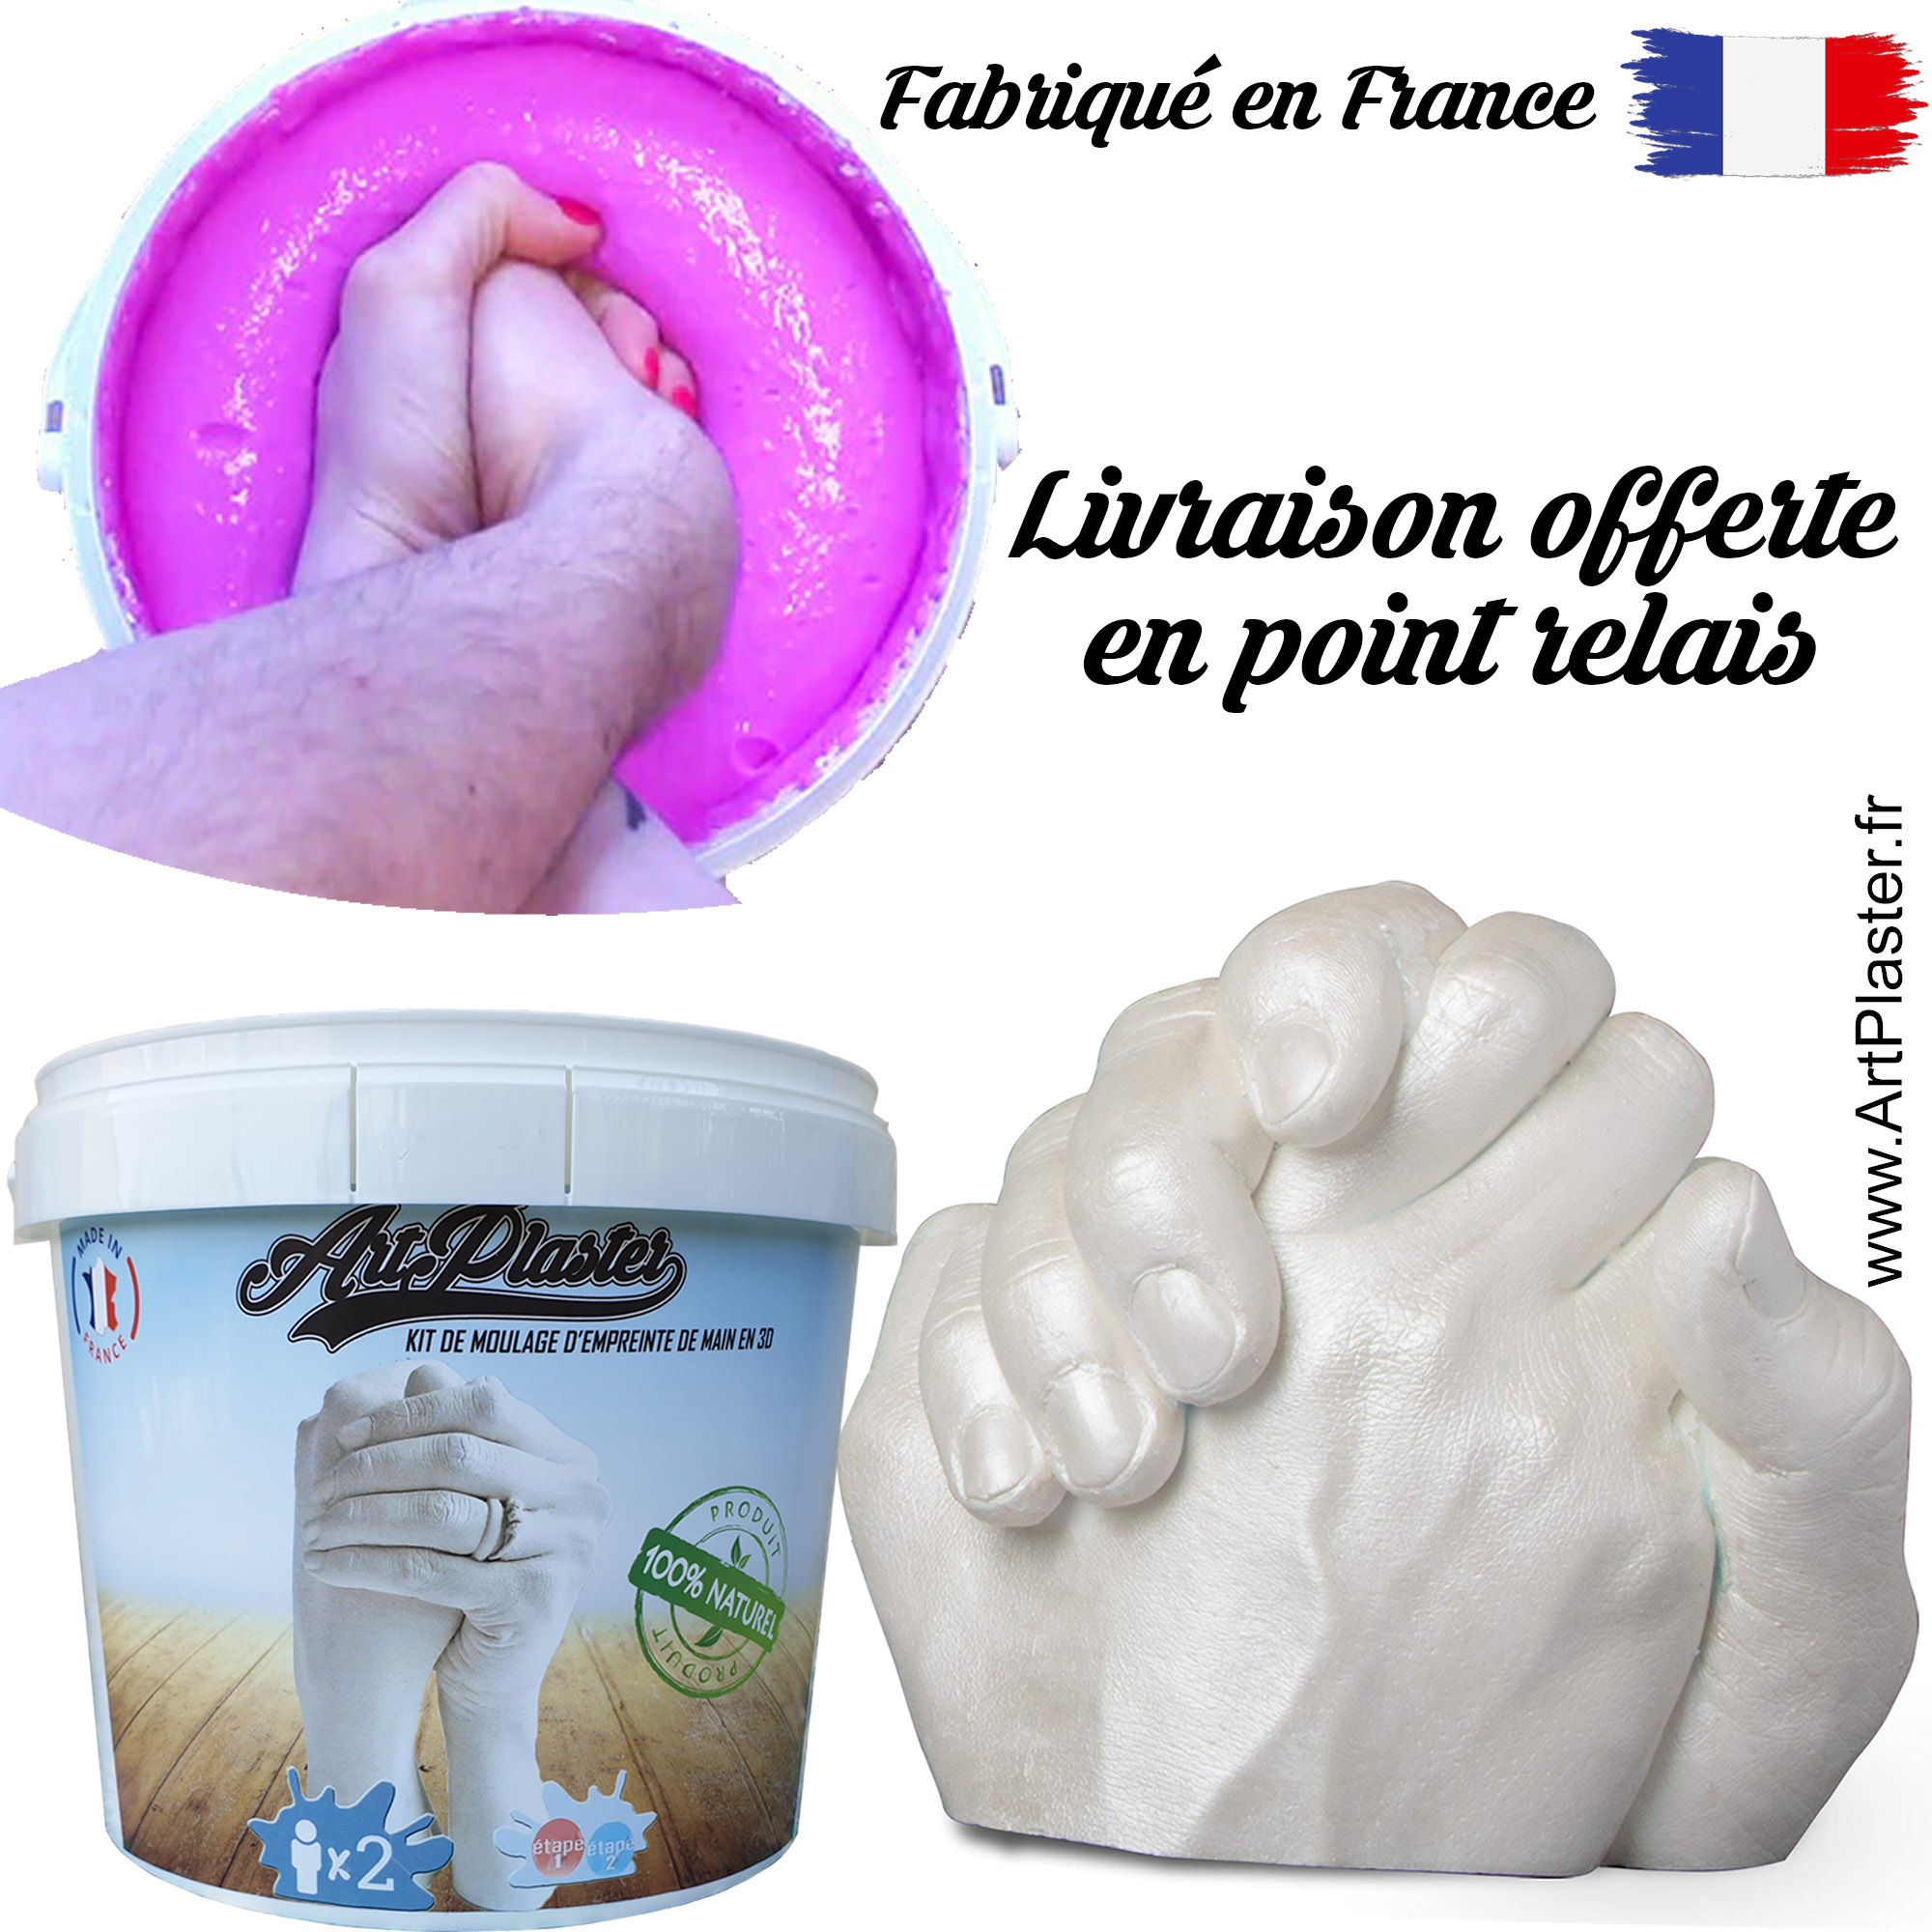 Pack de 2 Kit de moulage d'empreinte 3D pour 2 mains adultes entrelacées,  offre spéciale pour la Saint Valentin – Spécialiste du moulage en 3D  ArtPlaster France